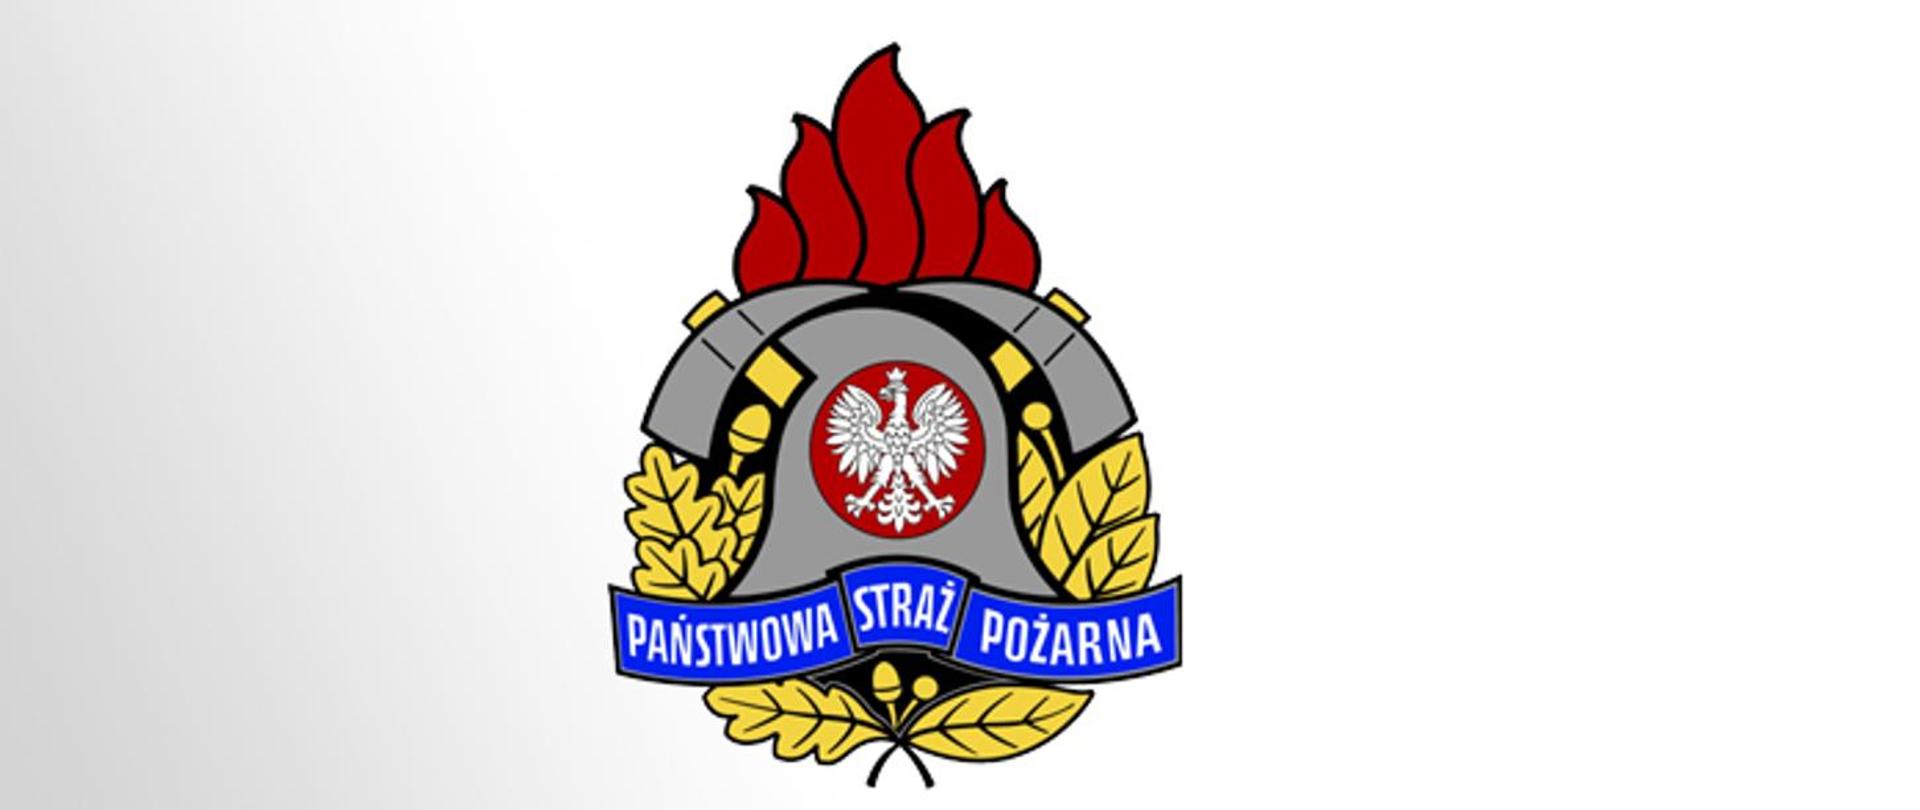 Zdjęcie przestawia logo Państwowej straży pożarnej na szaro białym tle. 